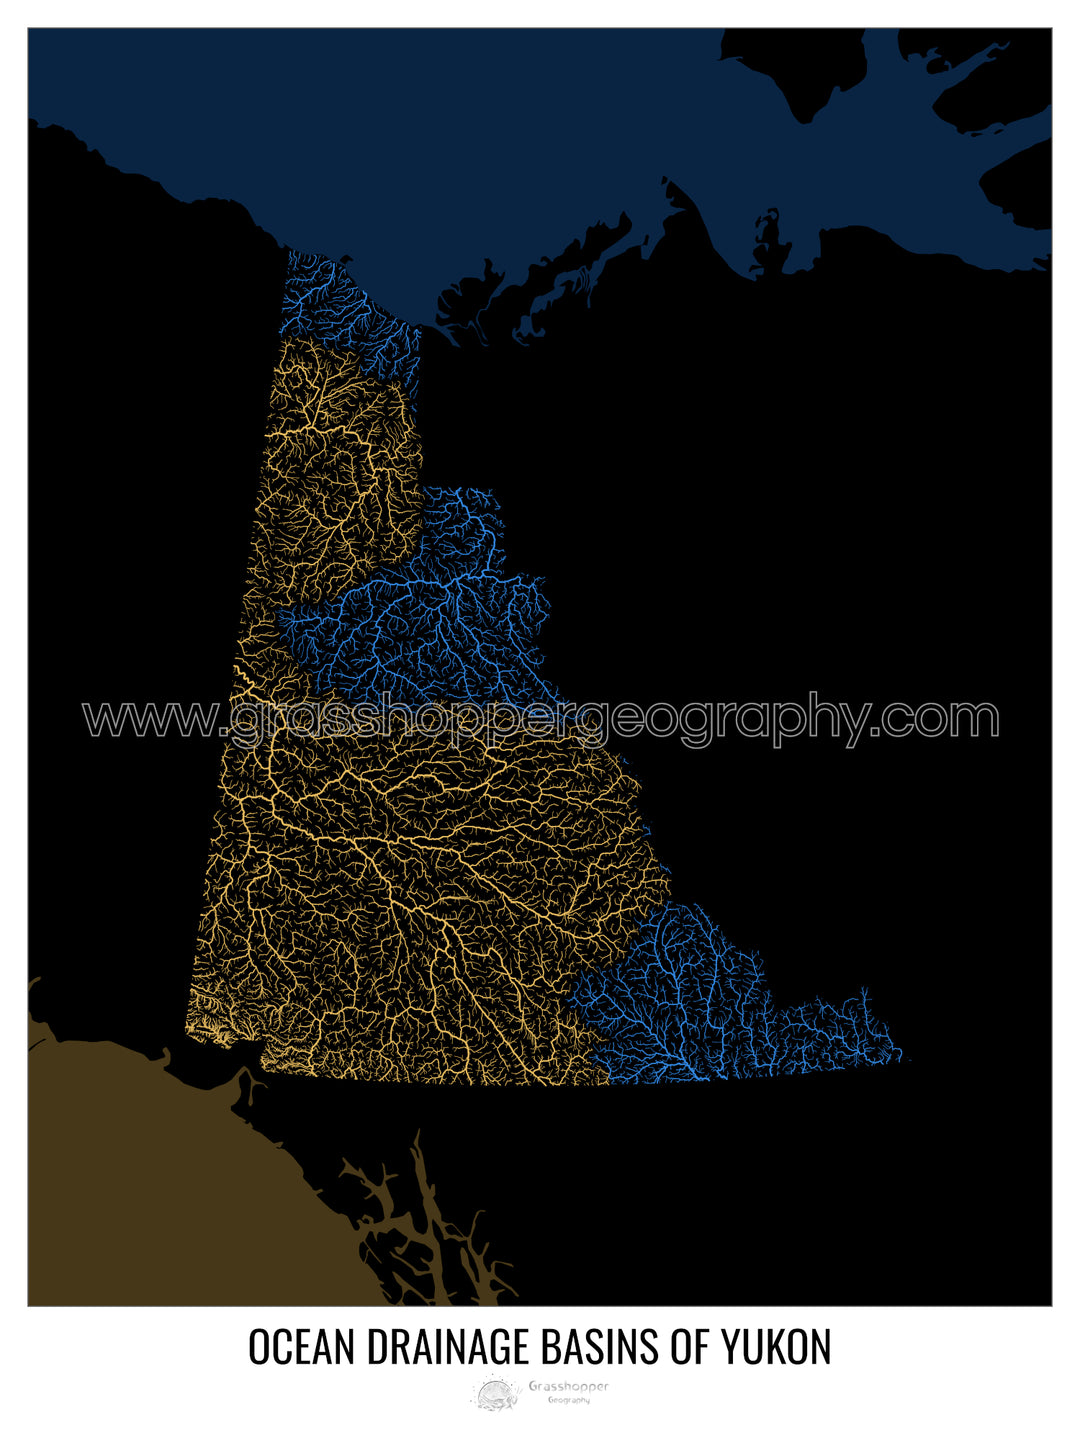 Yukon - Mapa de la cuenca de drenaje del océano, negro v2 - Impresión de bellas artes